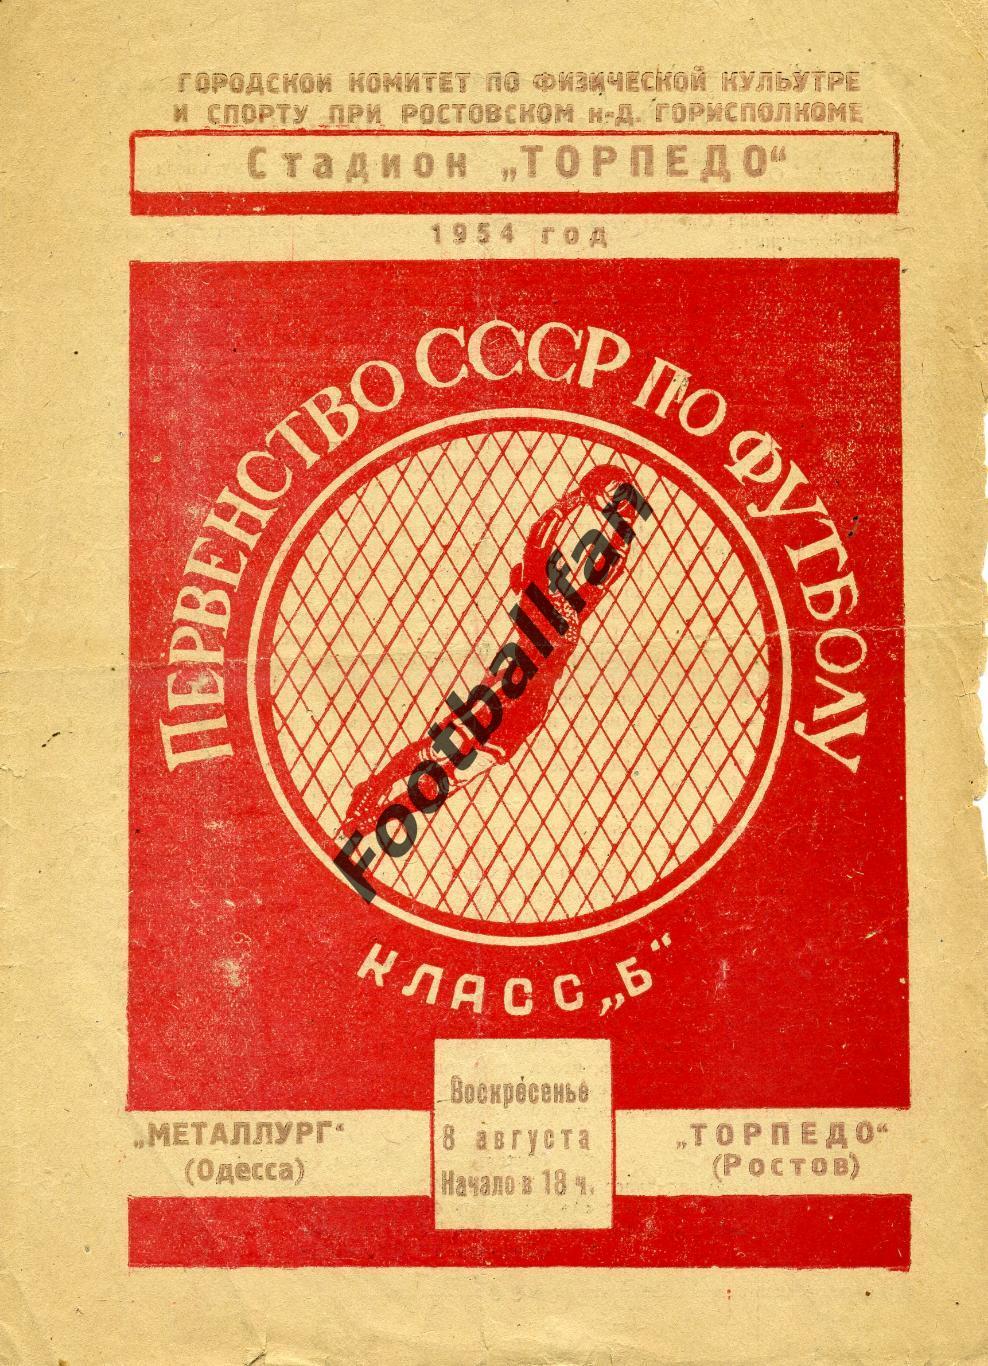 Торпедо Ростов - Металлург Одесса 08.08.1954